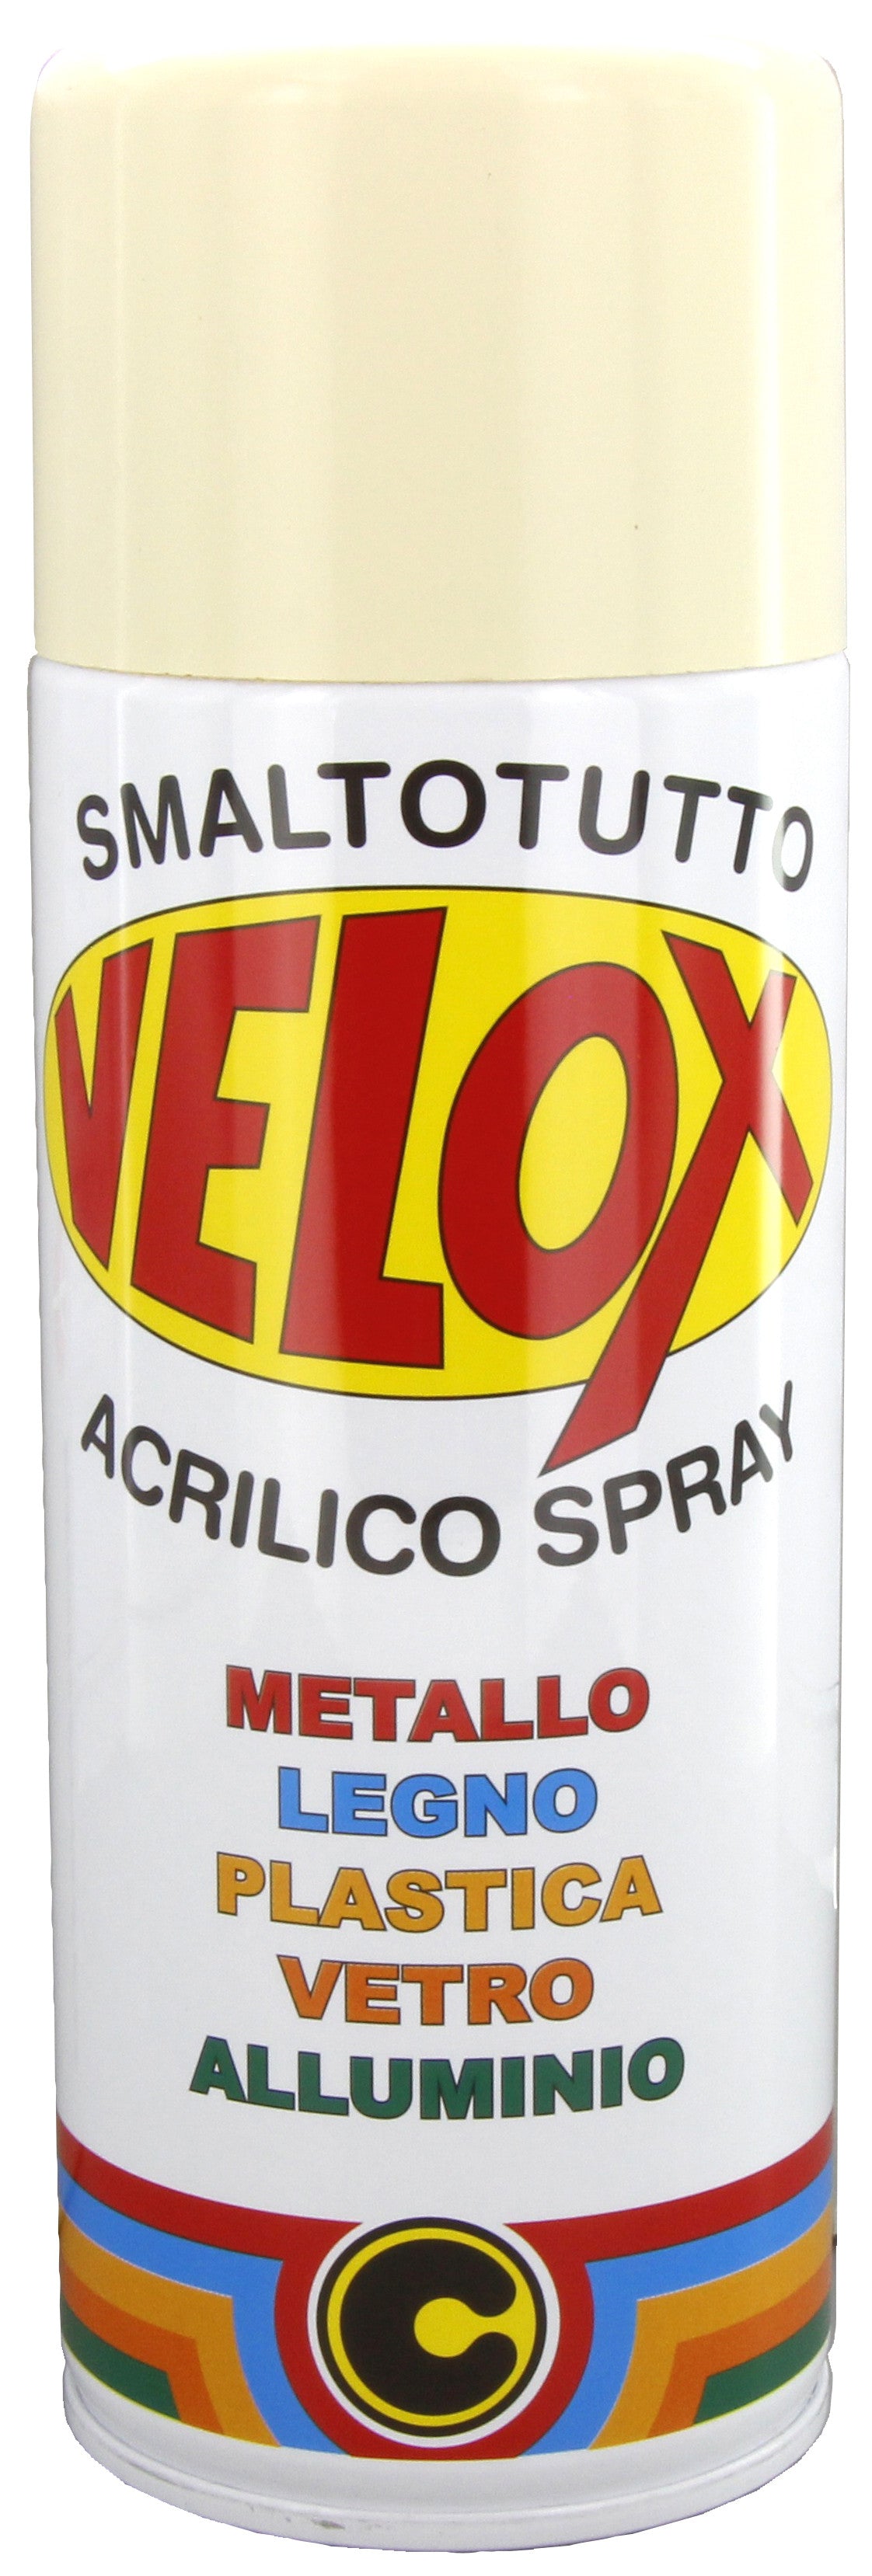 Velox spray acrilico avorio chiaro ral 1015 ITAL G.E.T.E.